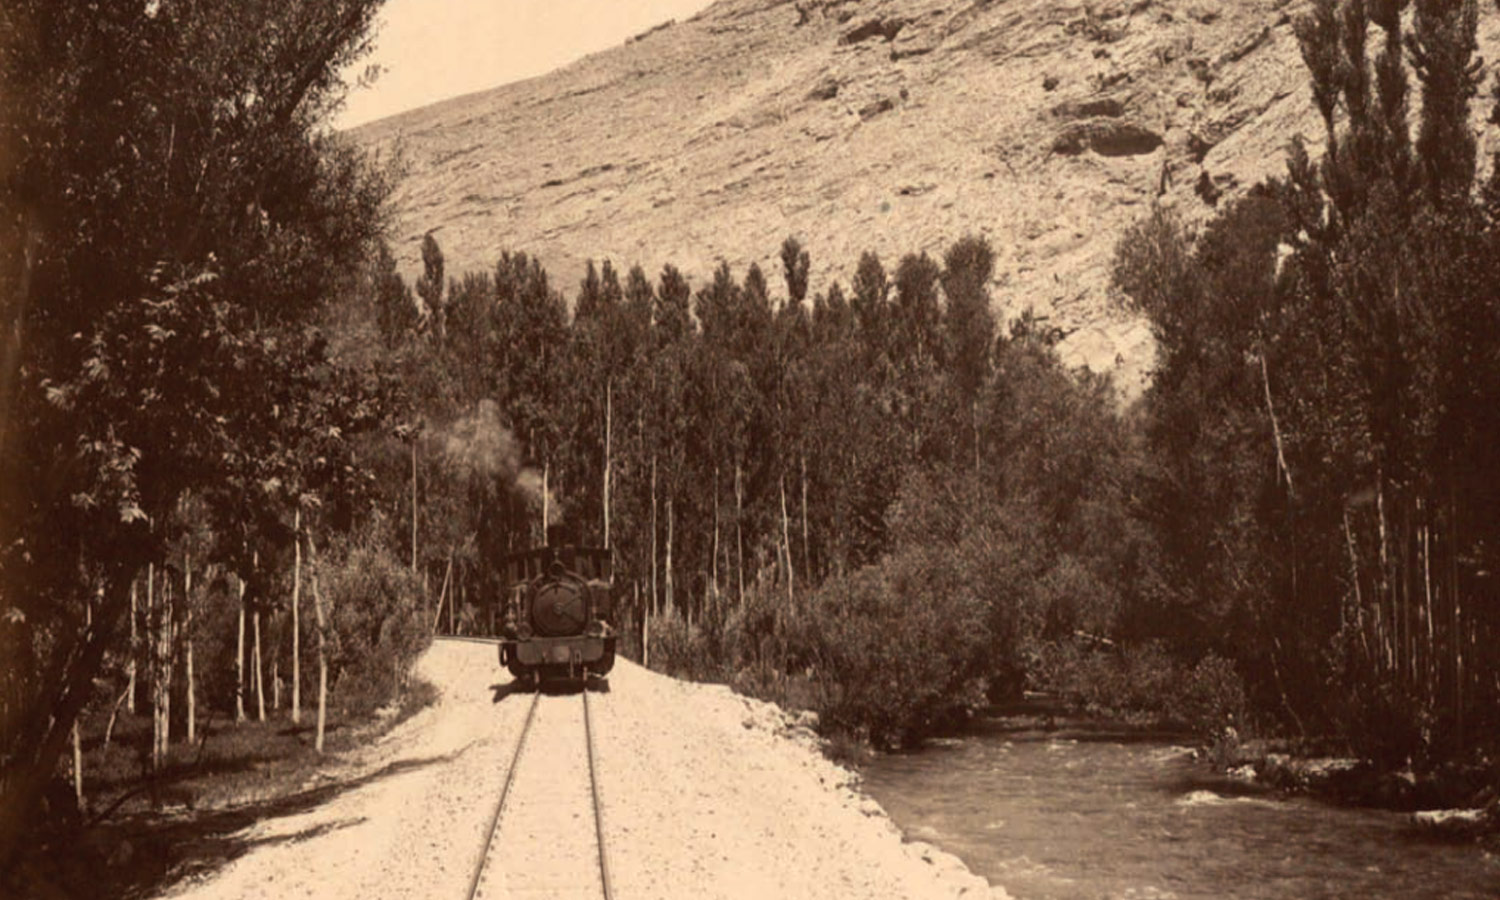 خط سكة حديد الحجاز الذي أنشئ على امتداد نهرى بردى في دمشق